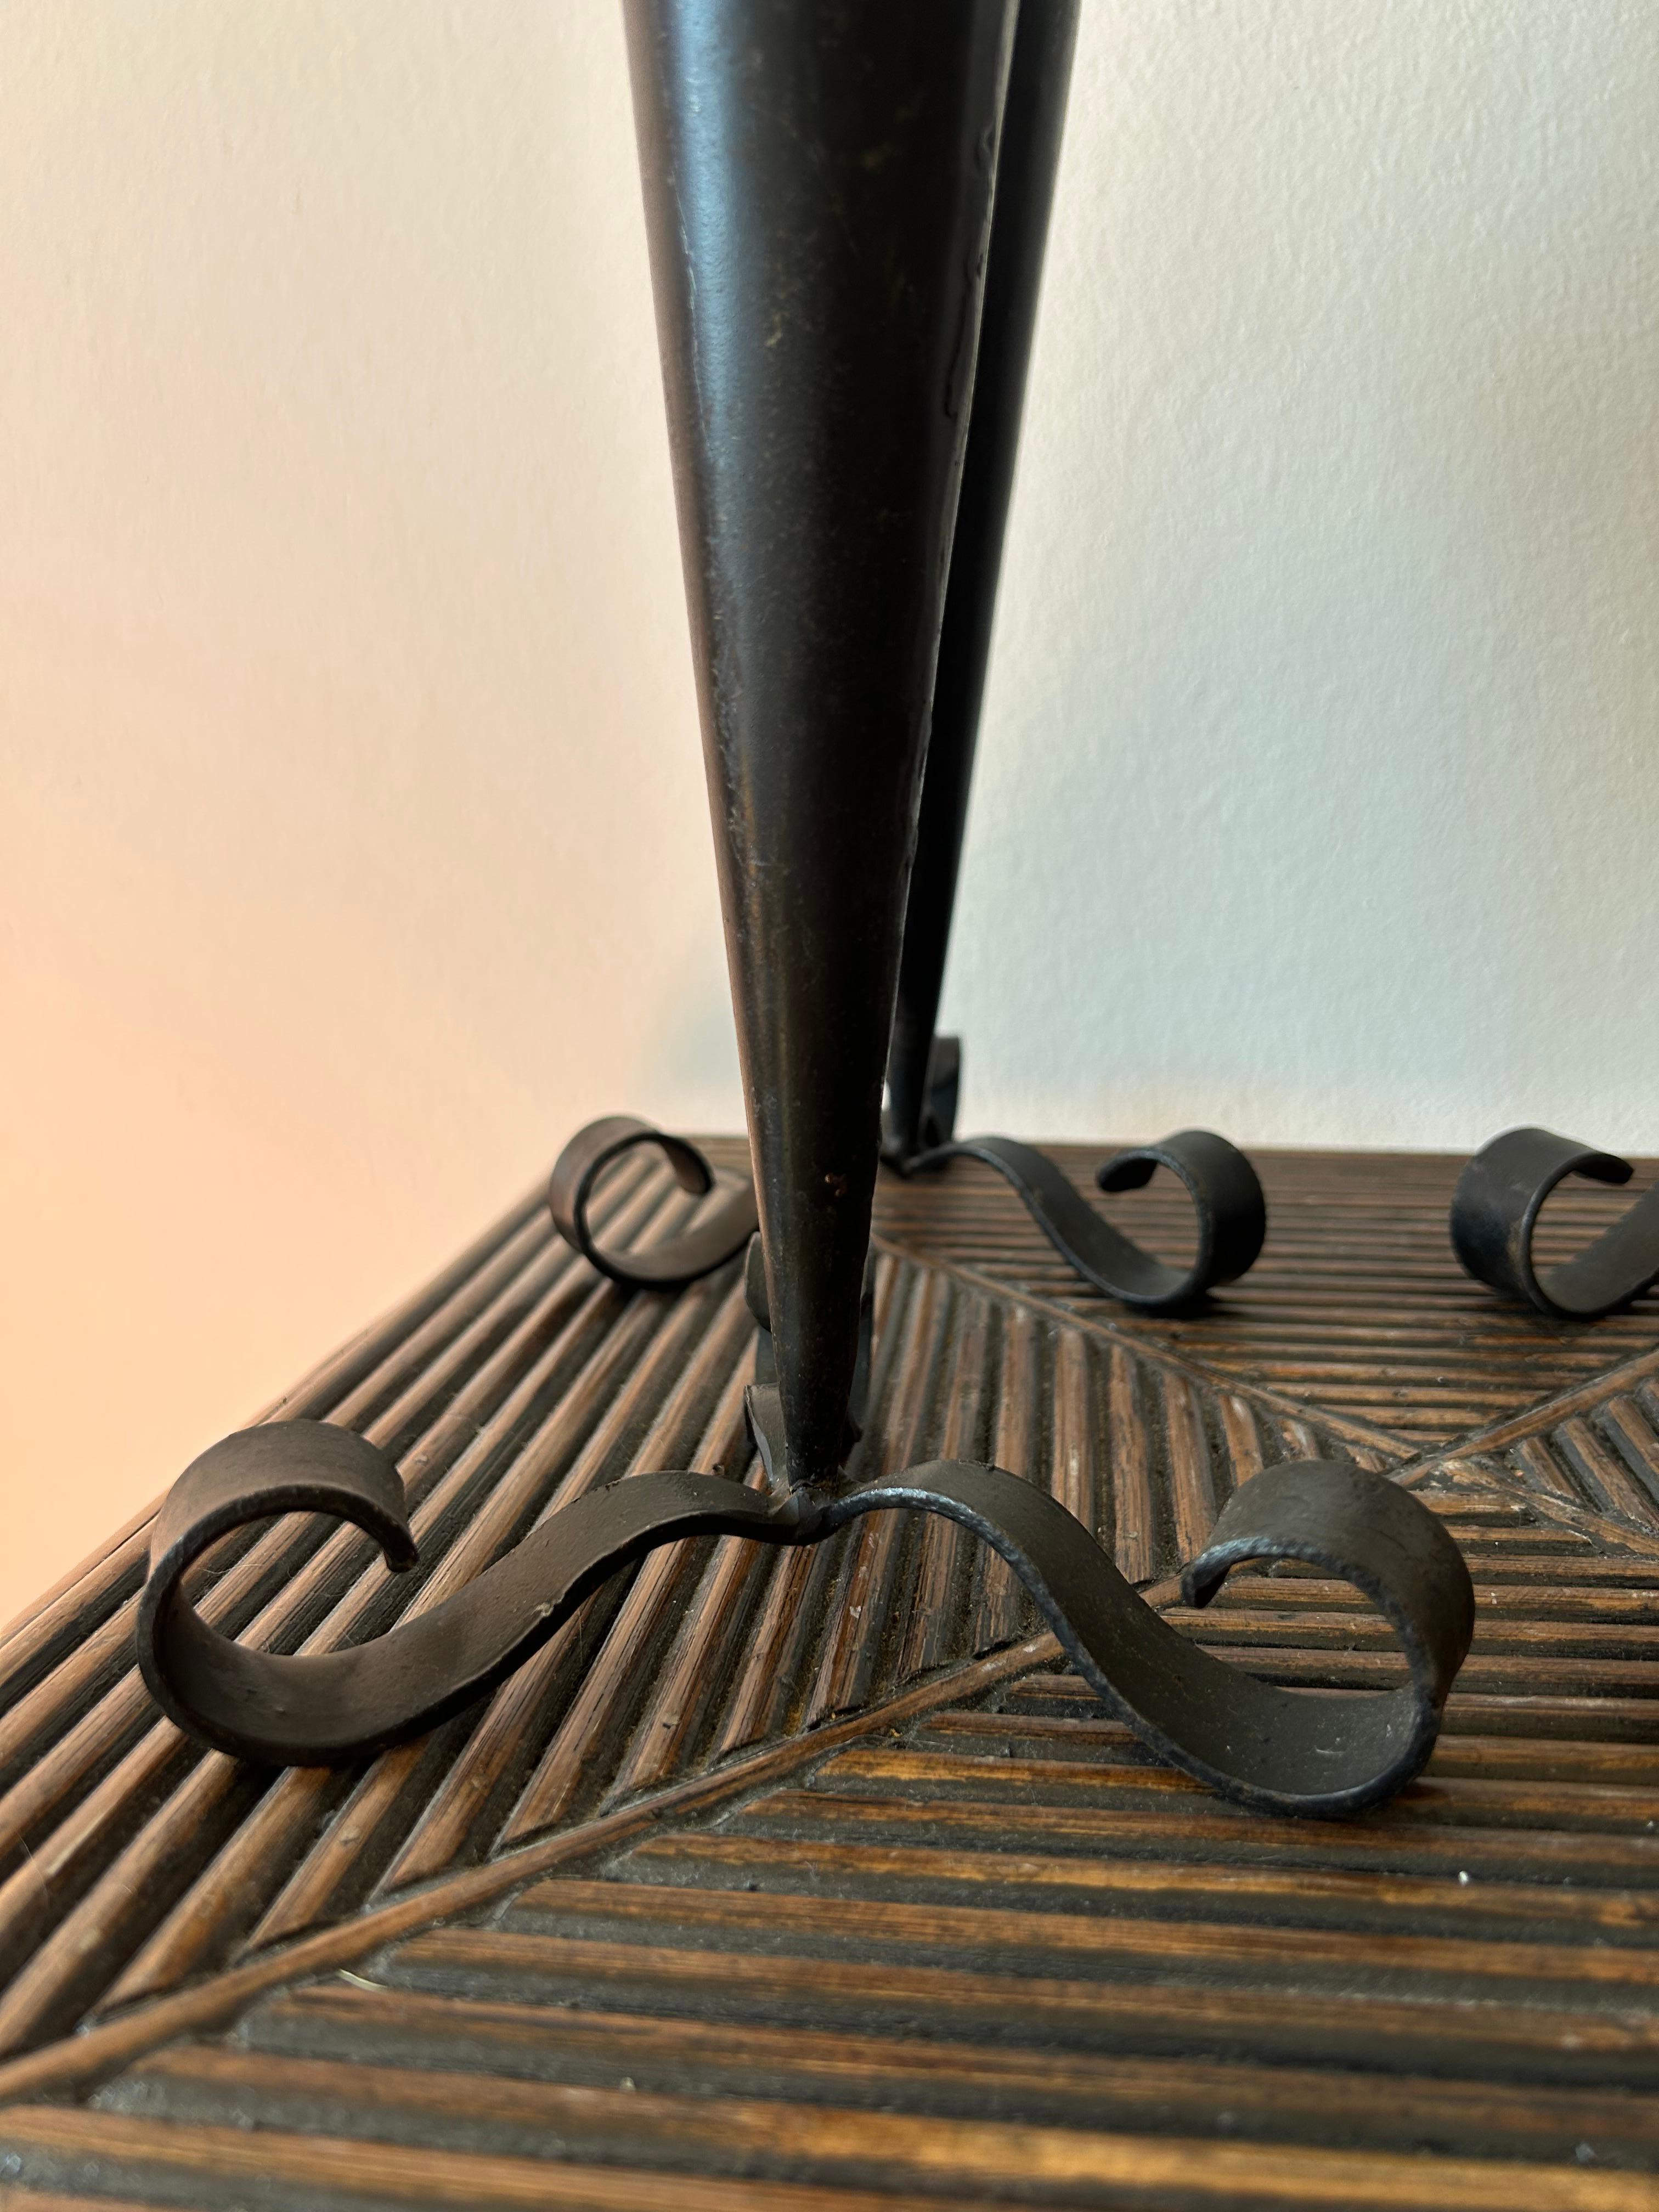 Ensemble de quatre bougeoirs art déco sculpturaux en fonte fabriqués au Danemark par un artisan danois dans les années 1960.
Les bâtons de bougie conviennent aux bougies de taille normale.
Les bâtons de bougie sont un détail décoratif parfait pour